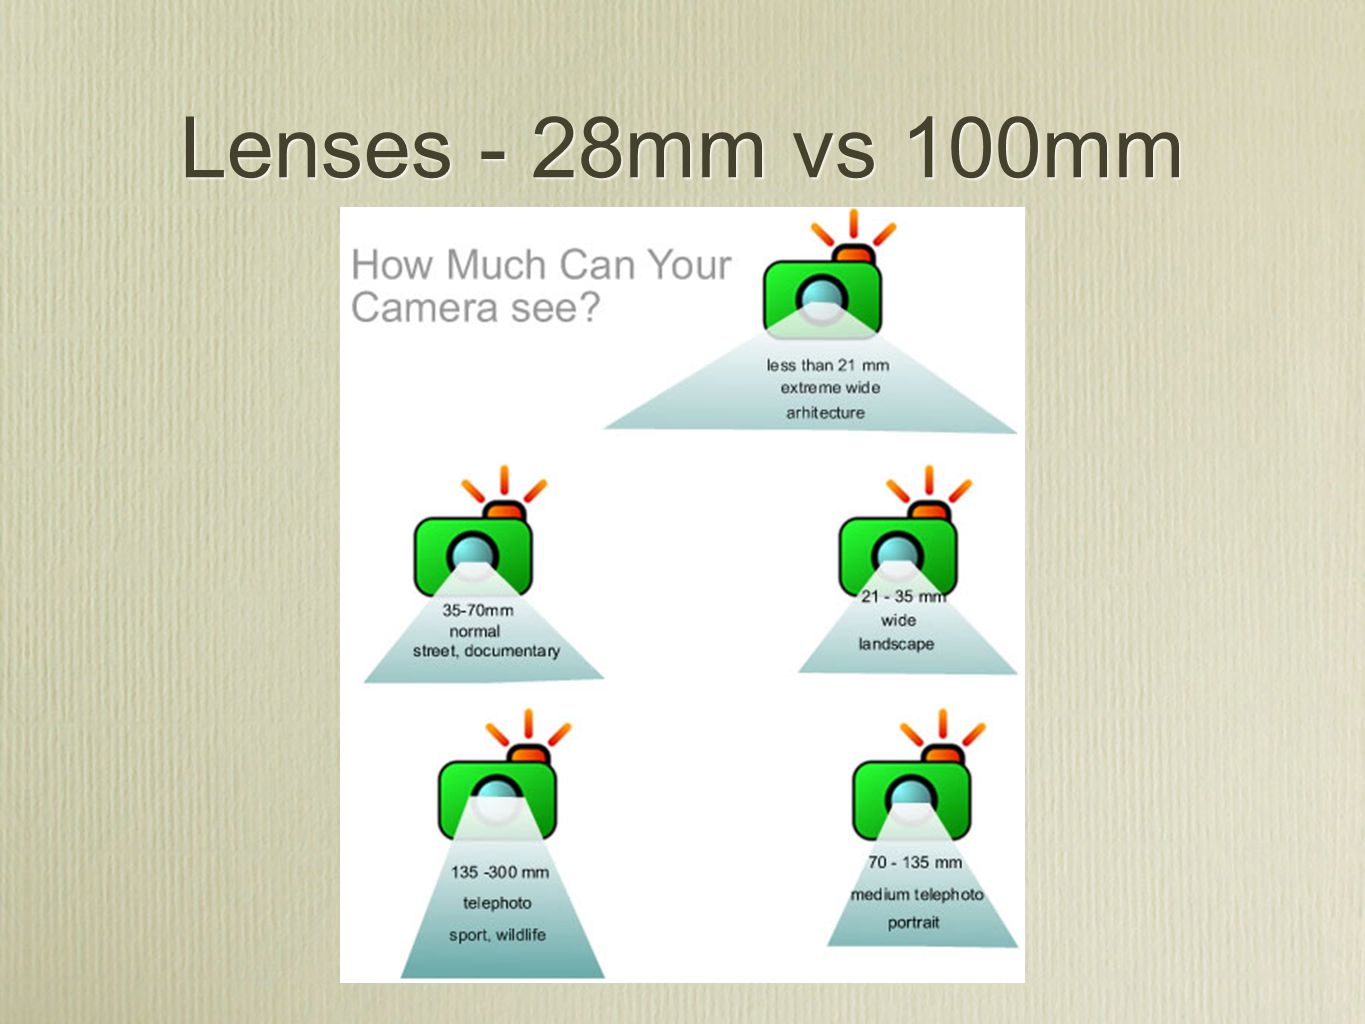 Lenses - 28mm vs 100mm